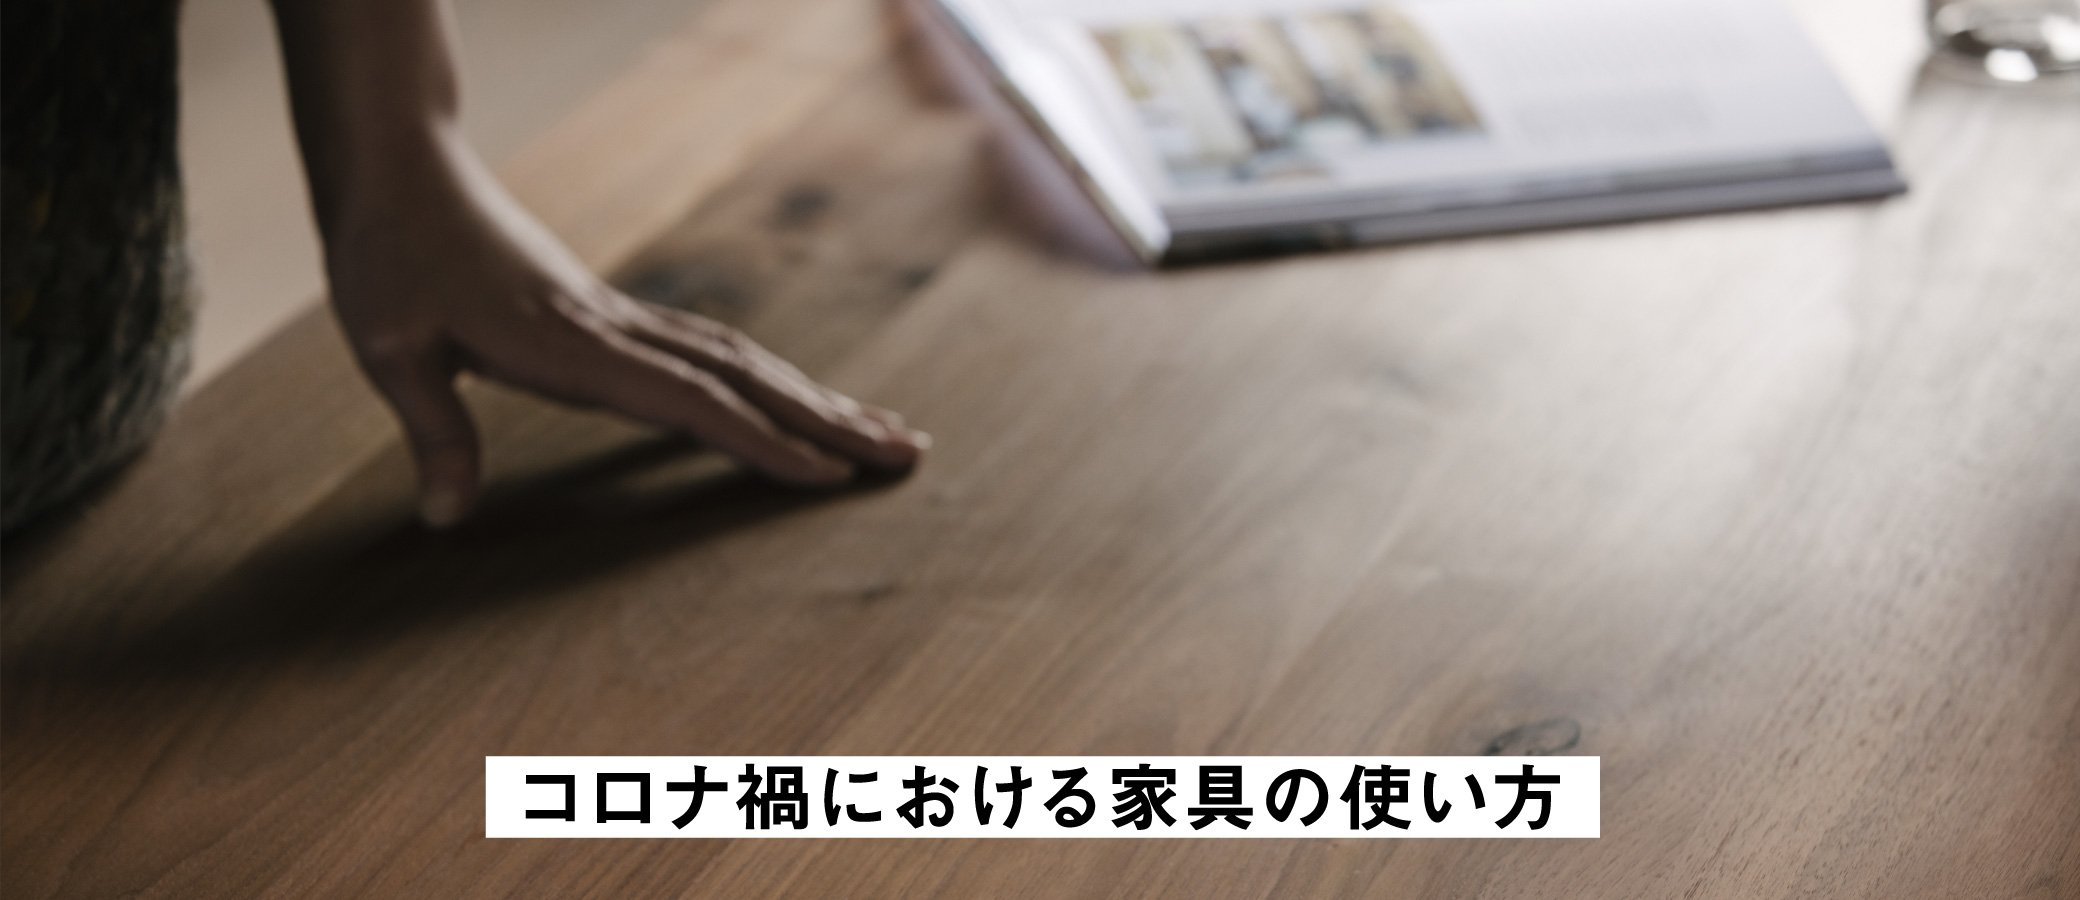 無垢家具の普段の使い方を簡単にご紹介。大切に永くSOLID大阪の家具を使っていただくための、無垢の家具についてのお話です。